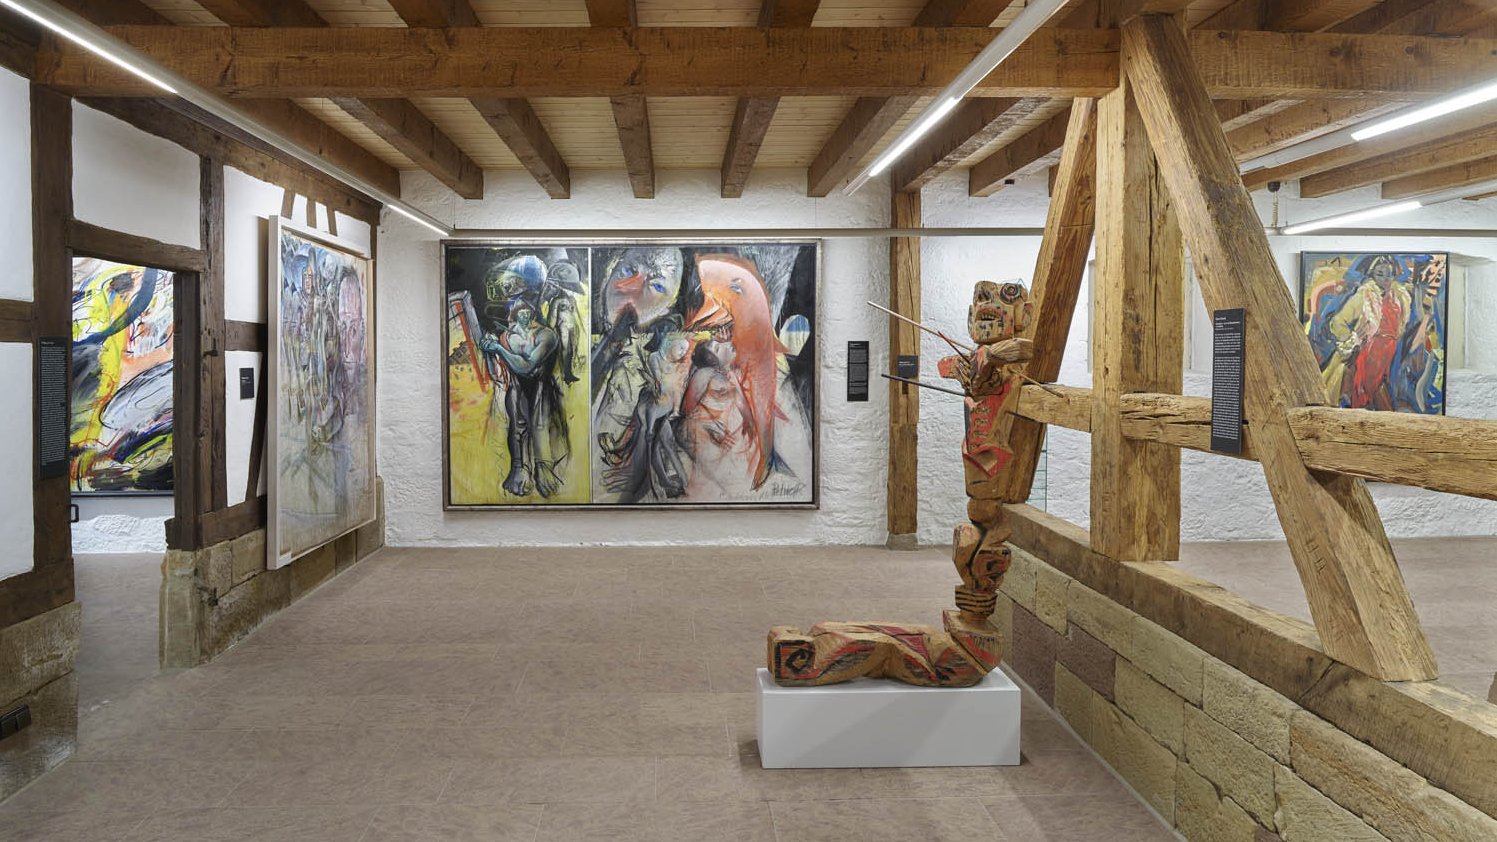 Bilder zentral: Wolfgang Petrick; links (Sicht durch die Tür): Walter Stöhrer; rechts: Barbara Quandt. Skulptur: Hans Scheib